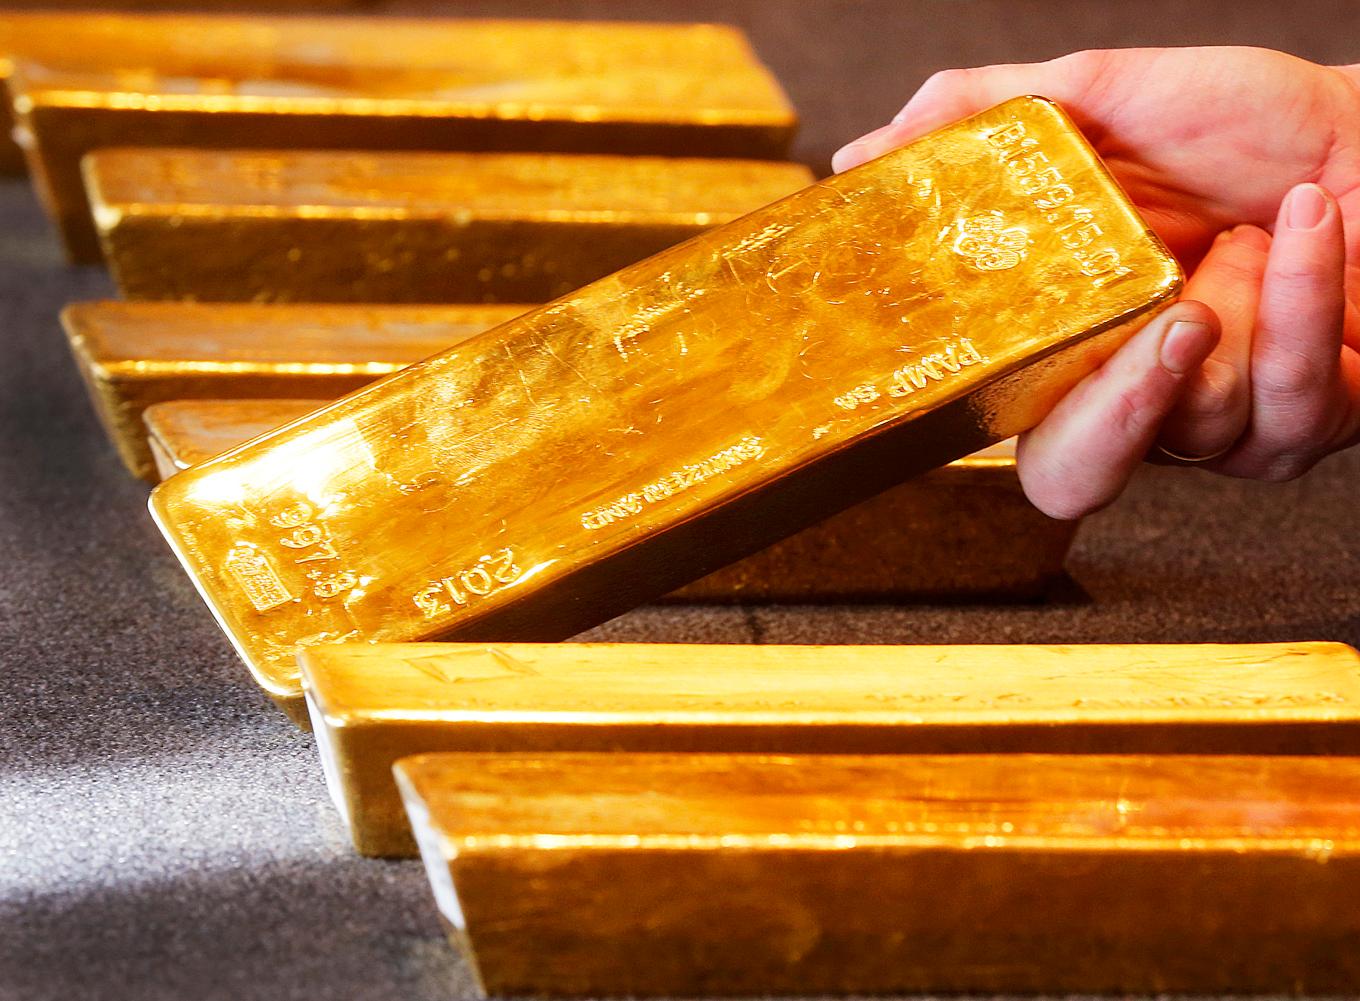 Kinas centralbank sitter på stora mängder guld. Arkivbild. Foto: Michael Probst/AP/TT